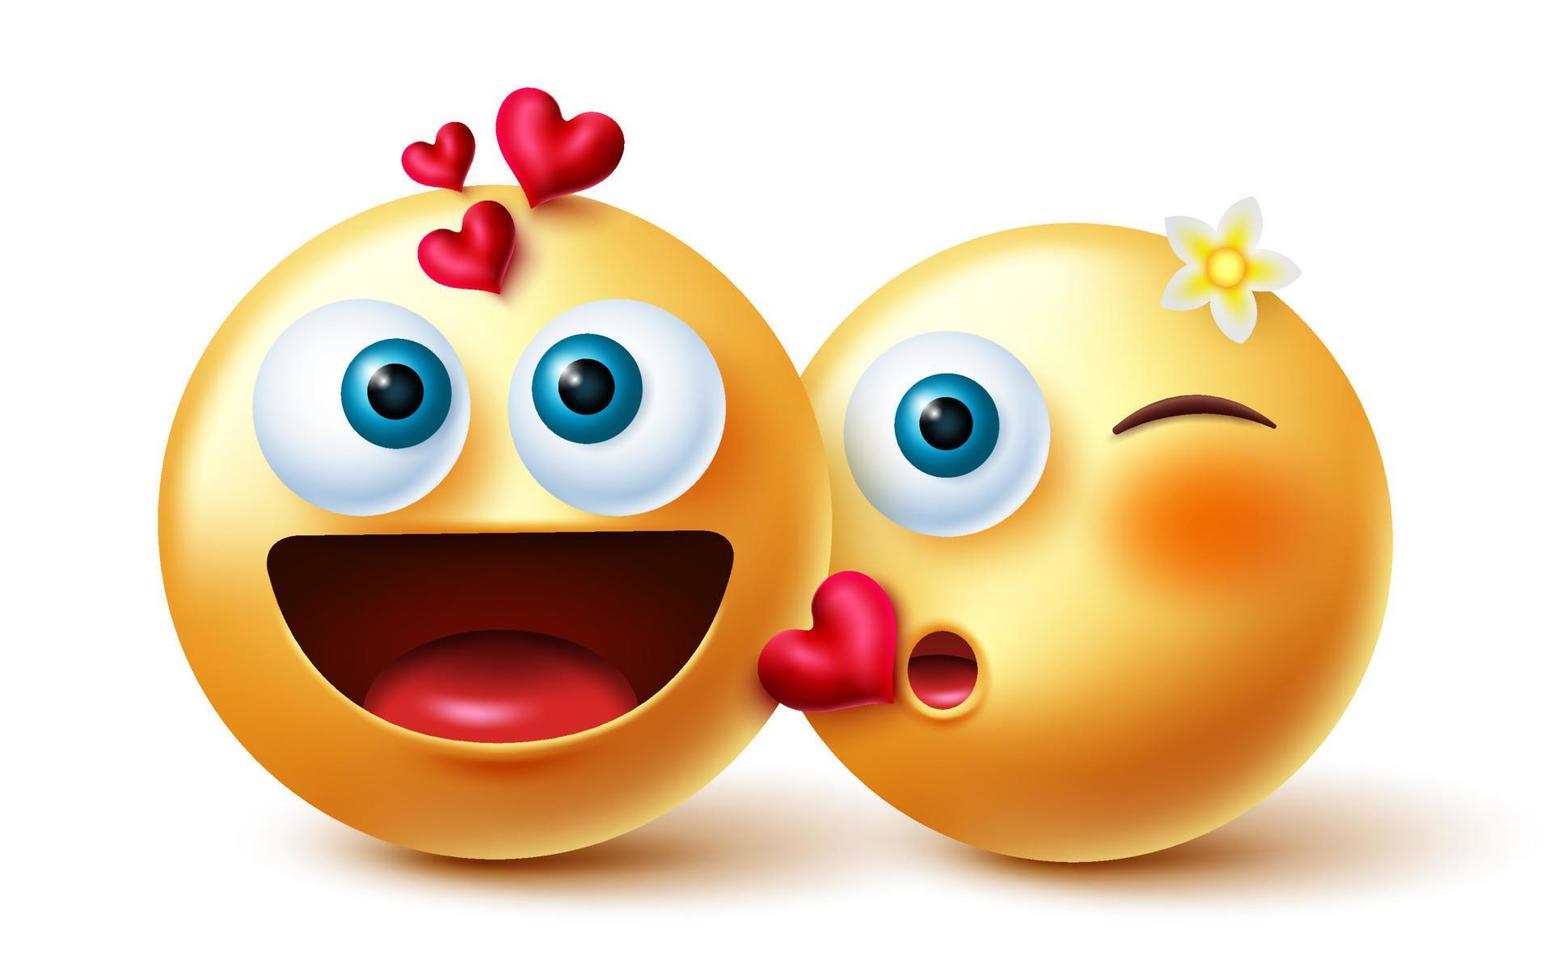 projeto de conceito de vetor de casal emoji. emoji 3d inlove characters em um gesto de beijo com sentimentos românticos e expressão para o personagem de namorados emoticon amantes. ilustração vetorial.